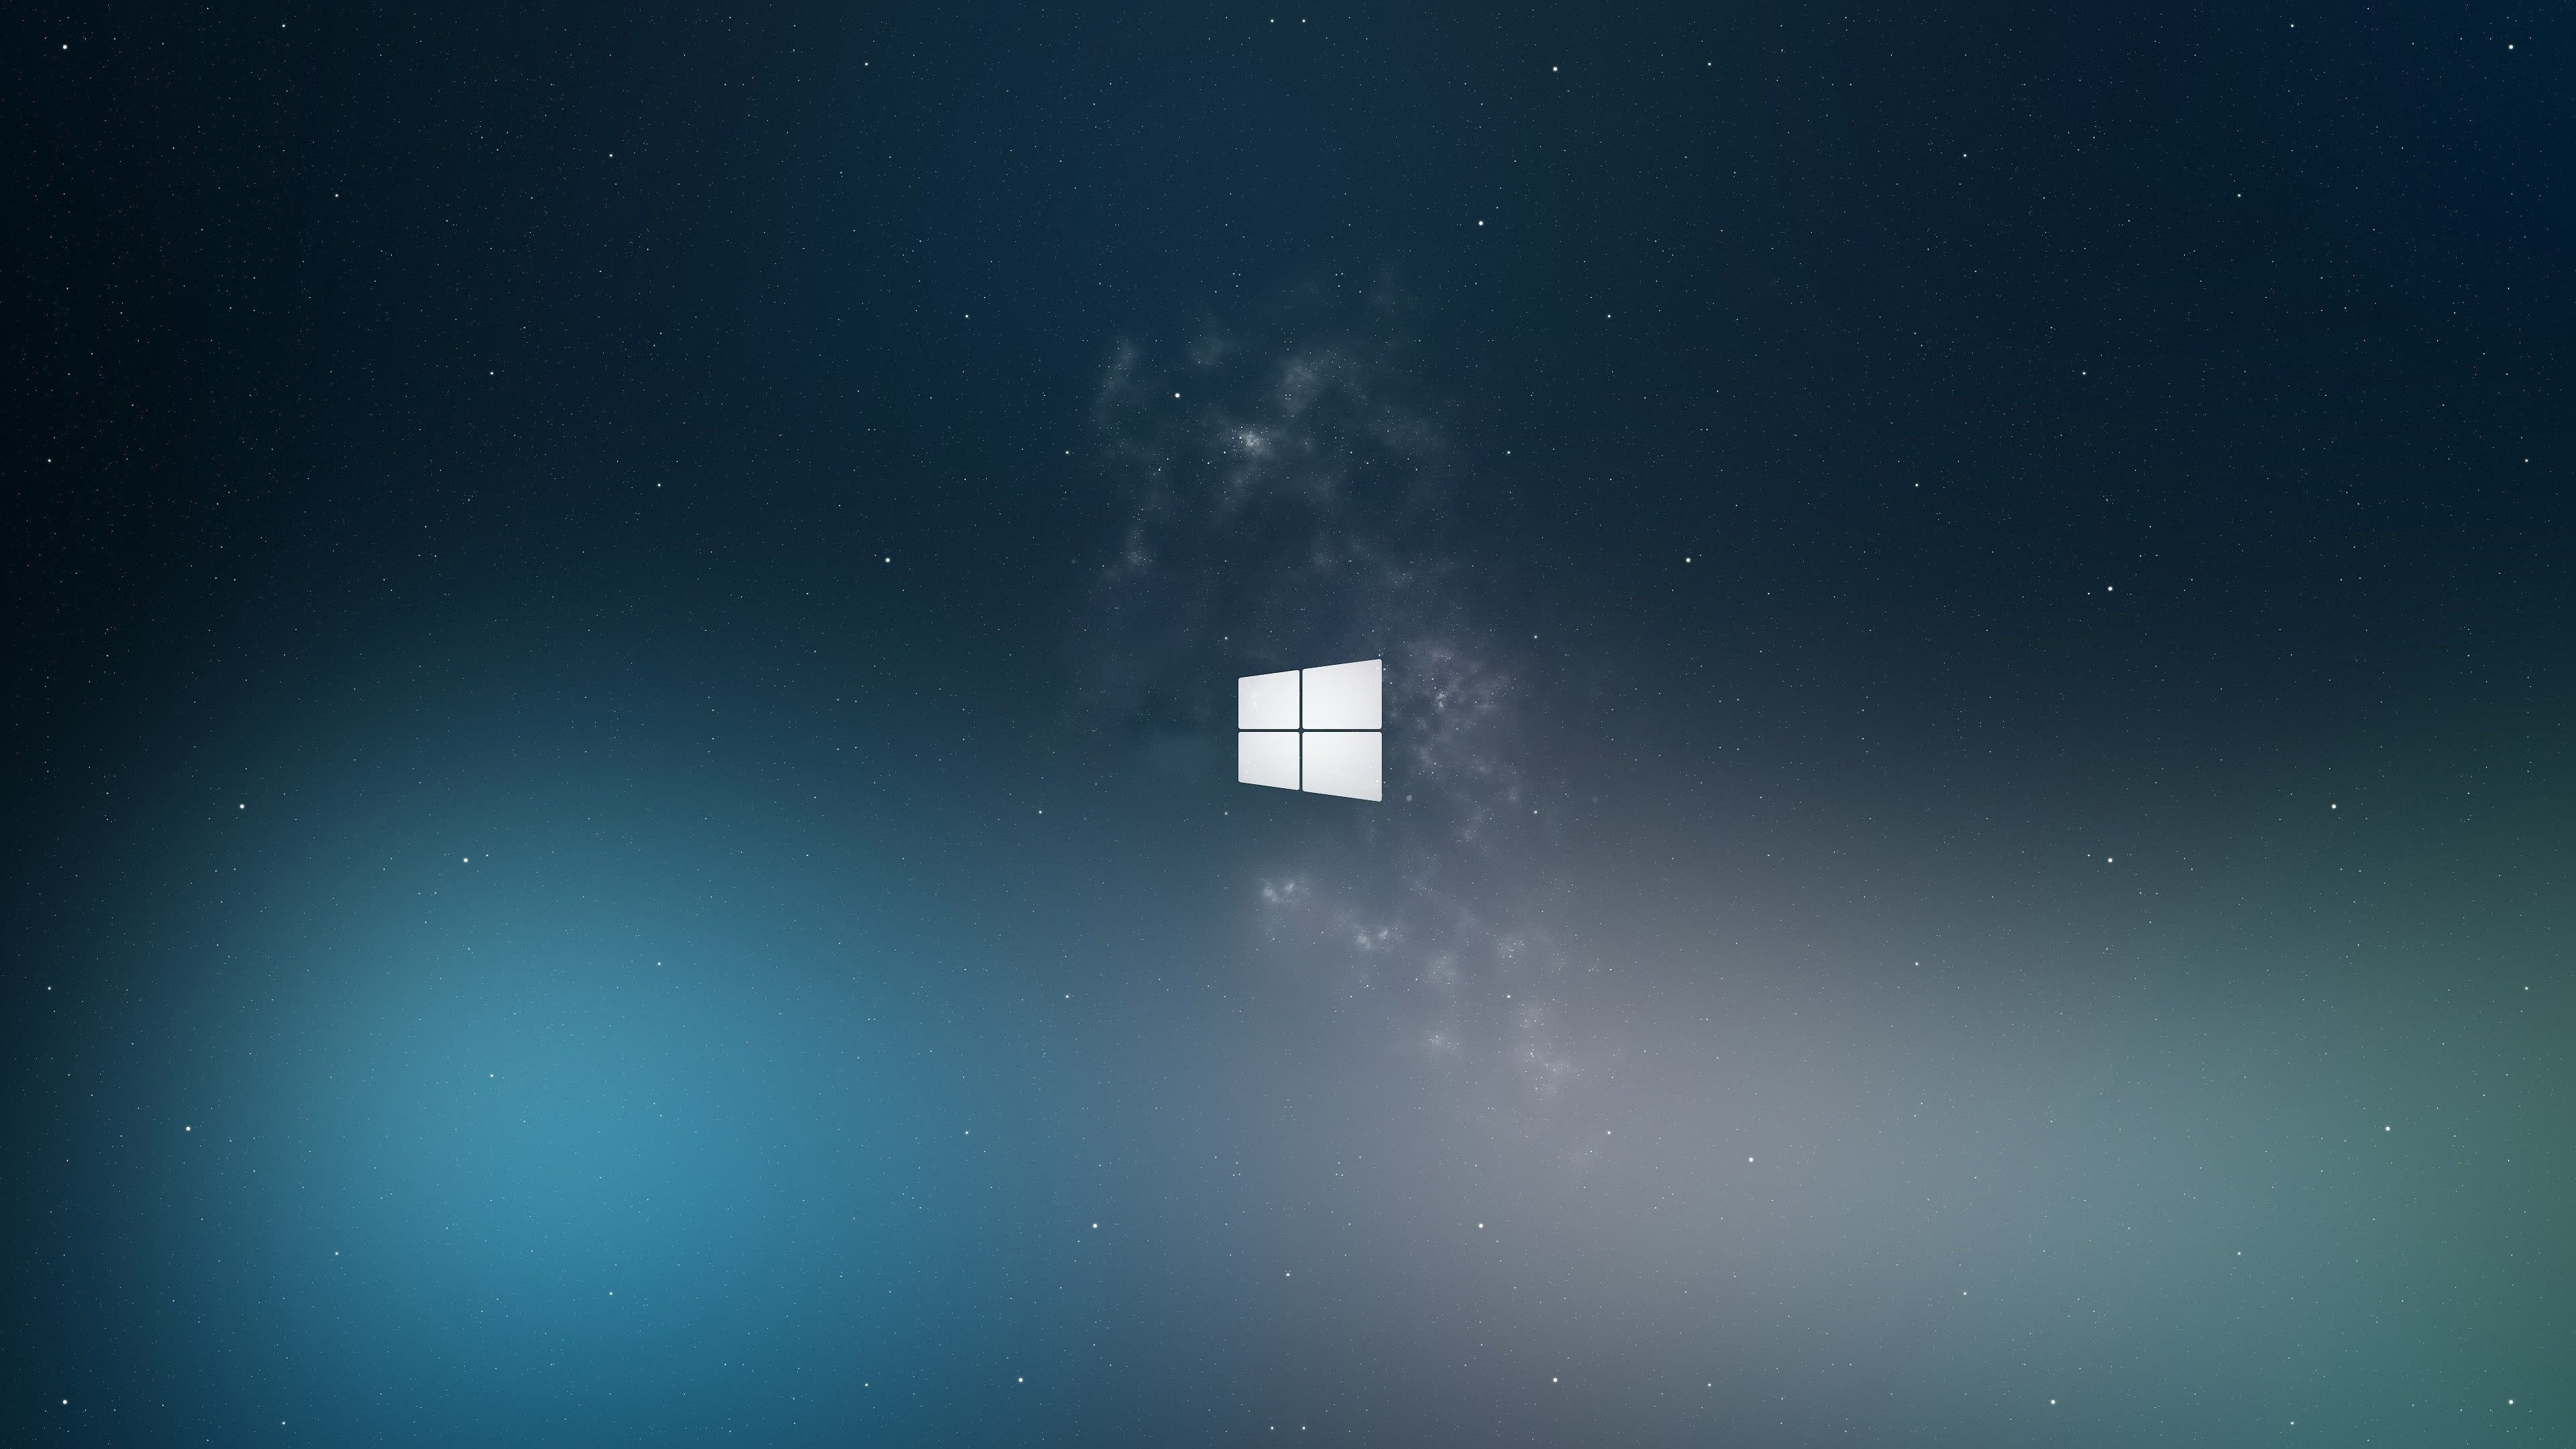 Hình nền Windows: Tìm kiếm hình nền đẹp cho máy tính của bạn để tạo cảm hứng mới cho công việc hàng ngày? Hãy xem qua bộ sưu tập hình nền Windows đa dạng trên mạng và tìm cho mình một thiết kế phù hợp nhất.